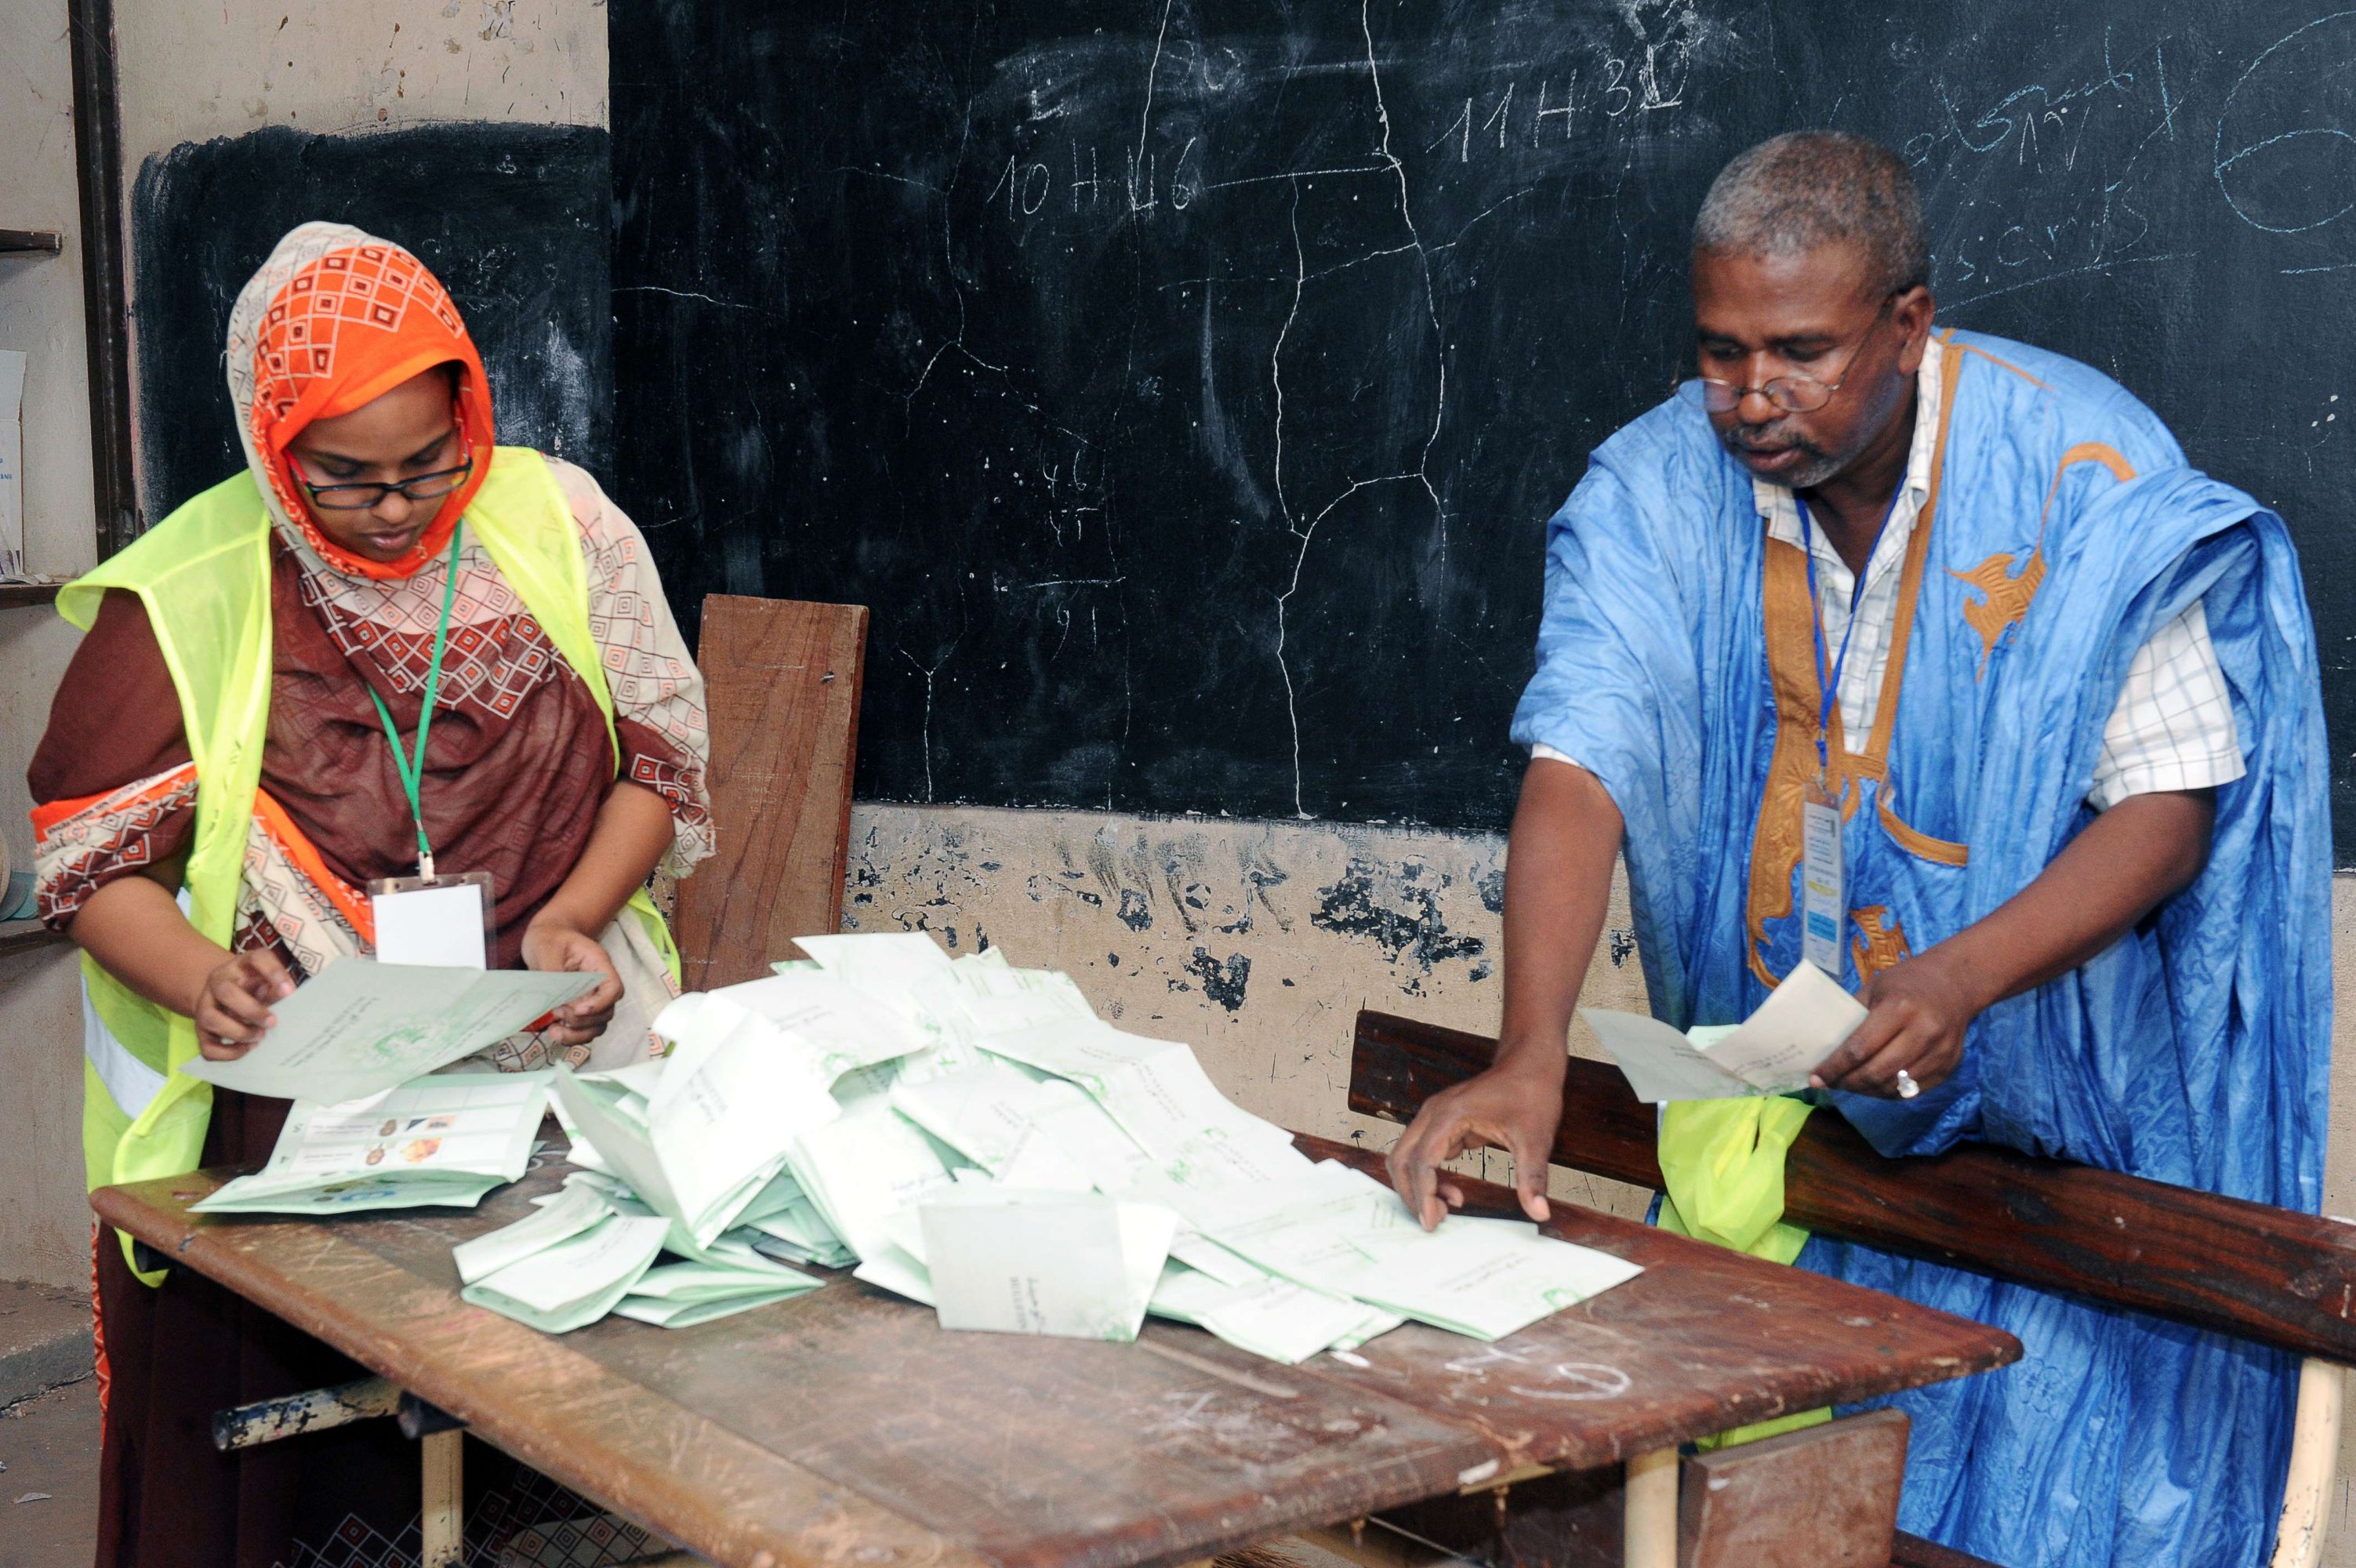 الانتخابات الموريتانية